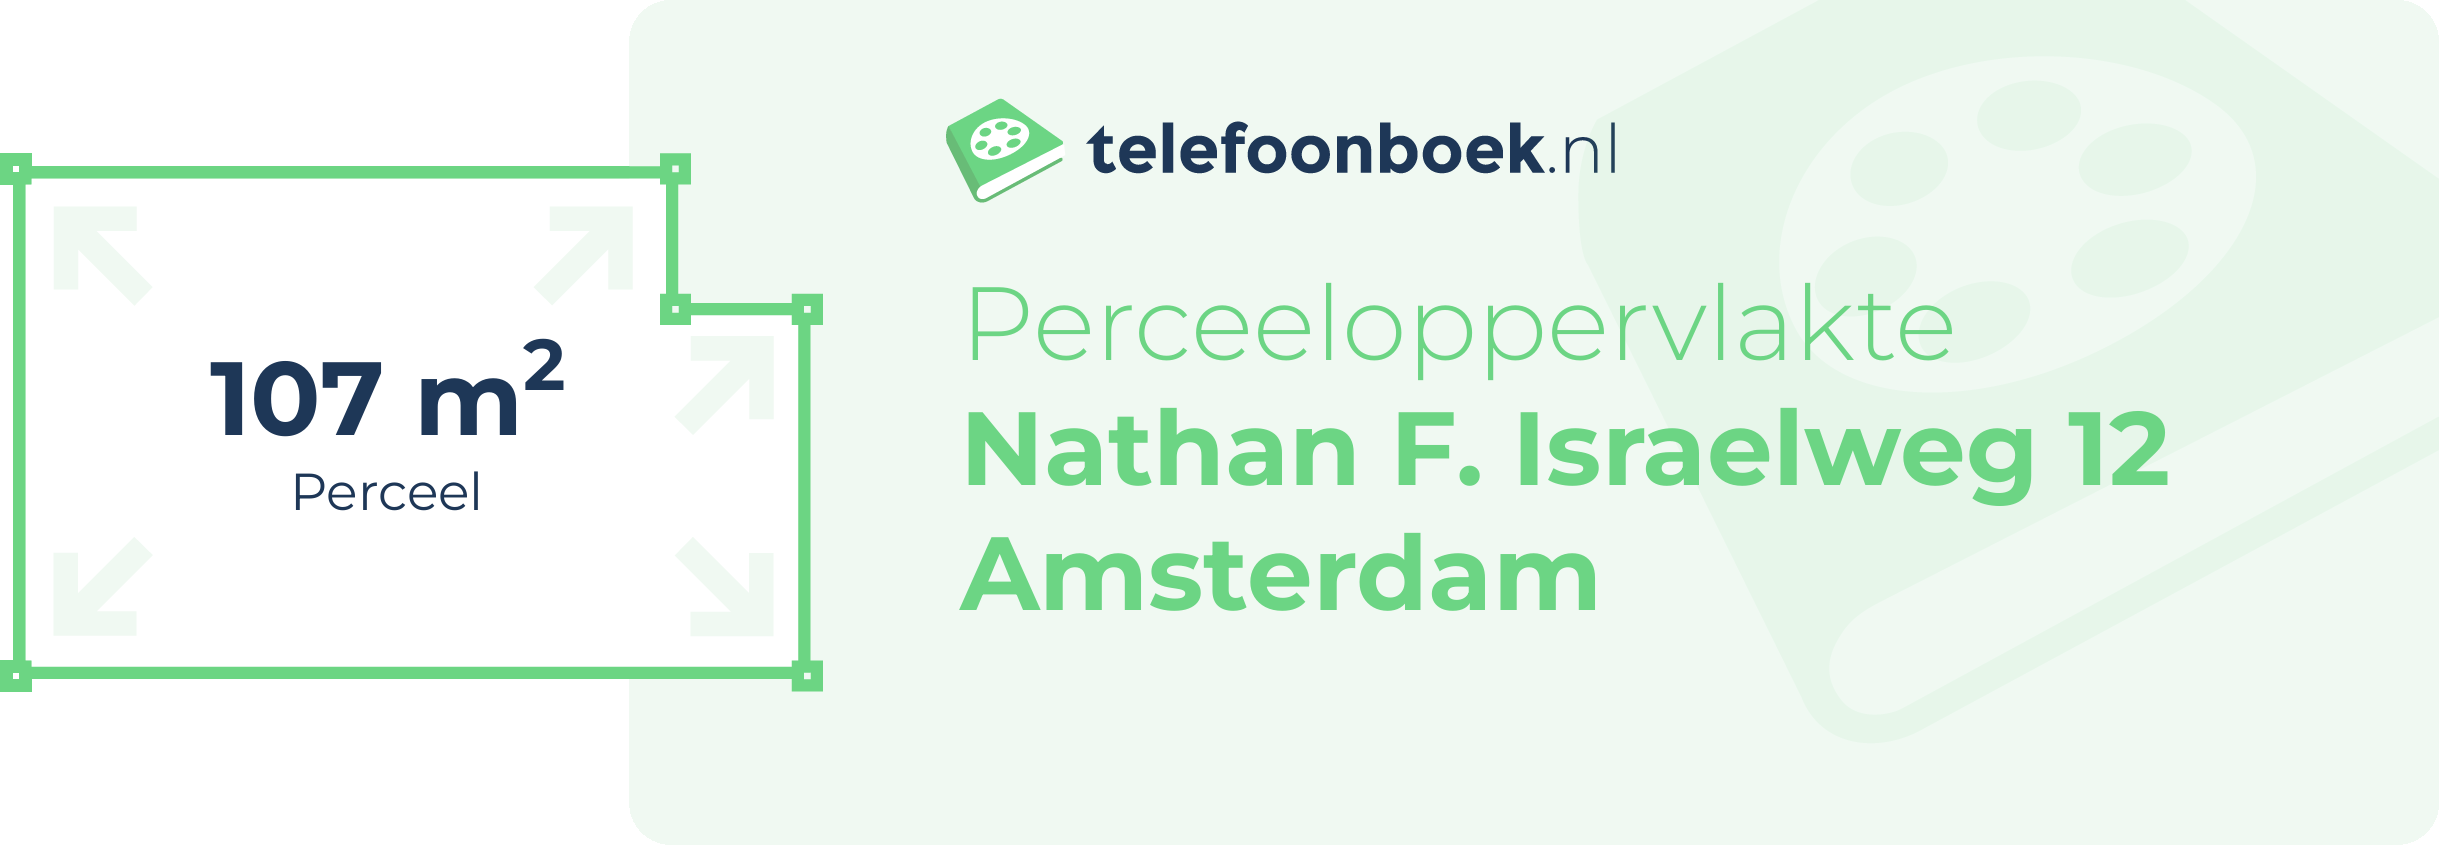 Perceeloppervlakte Nathan F. Israelweg 12 Amsterdam